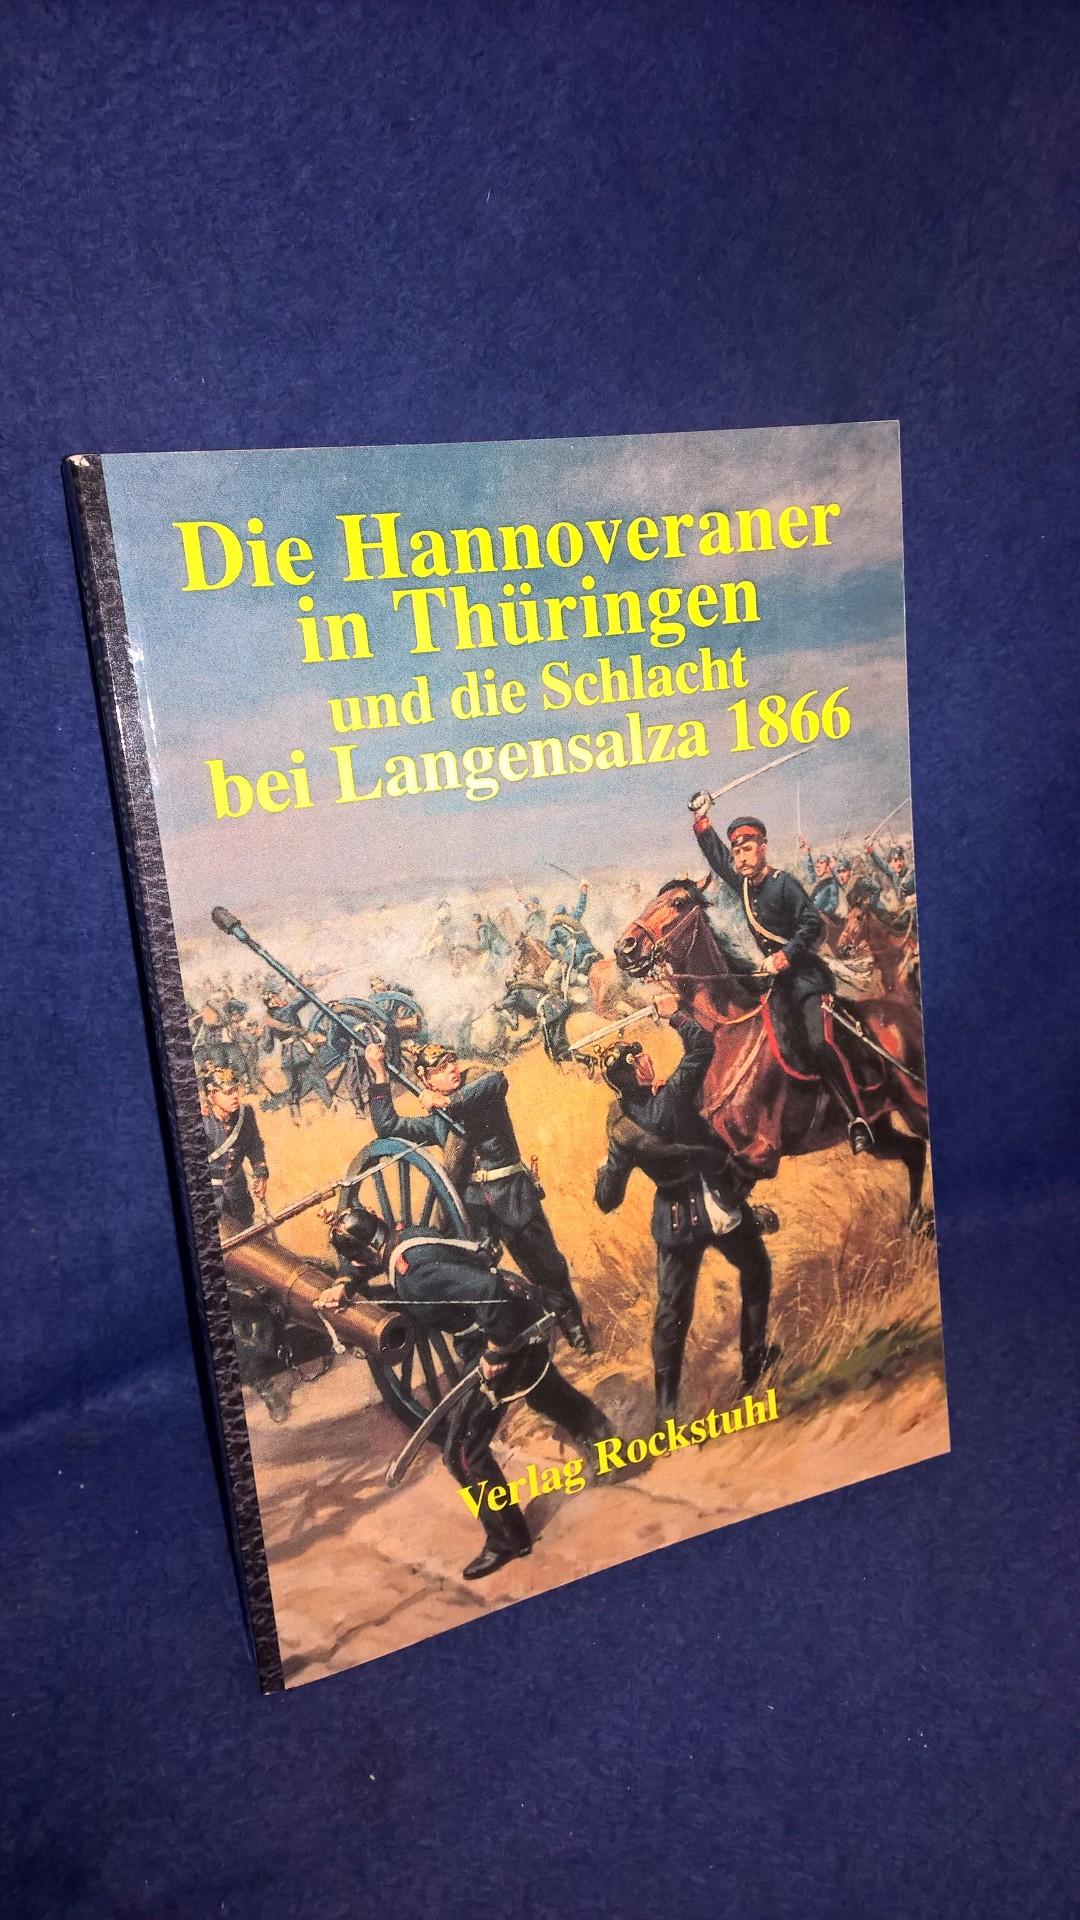 Die Hannoveraner in Thüringen und die Schlacht bei Langensalza 1866.